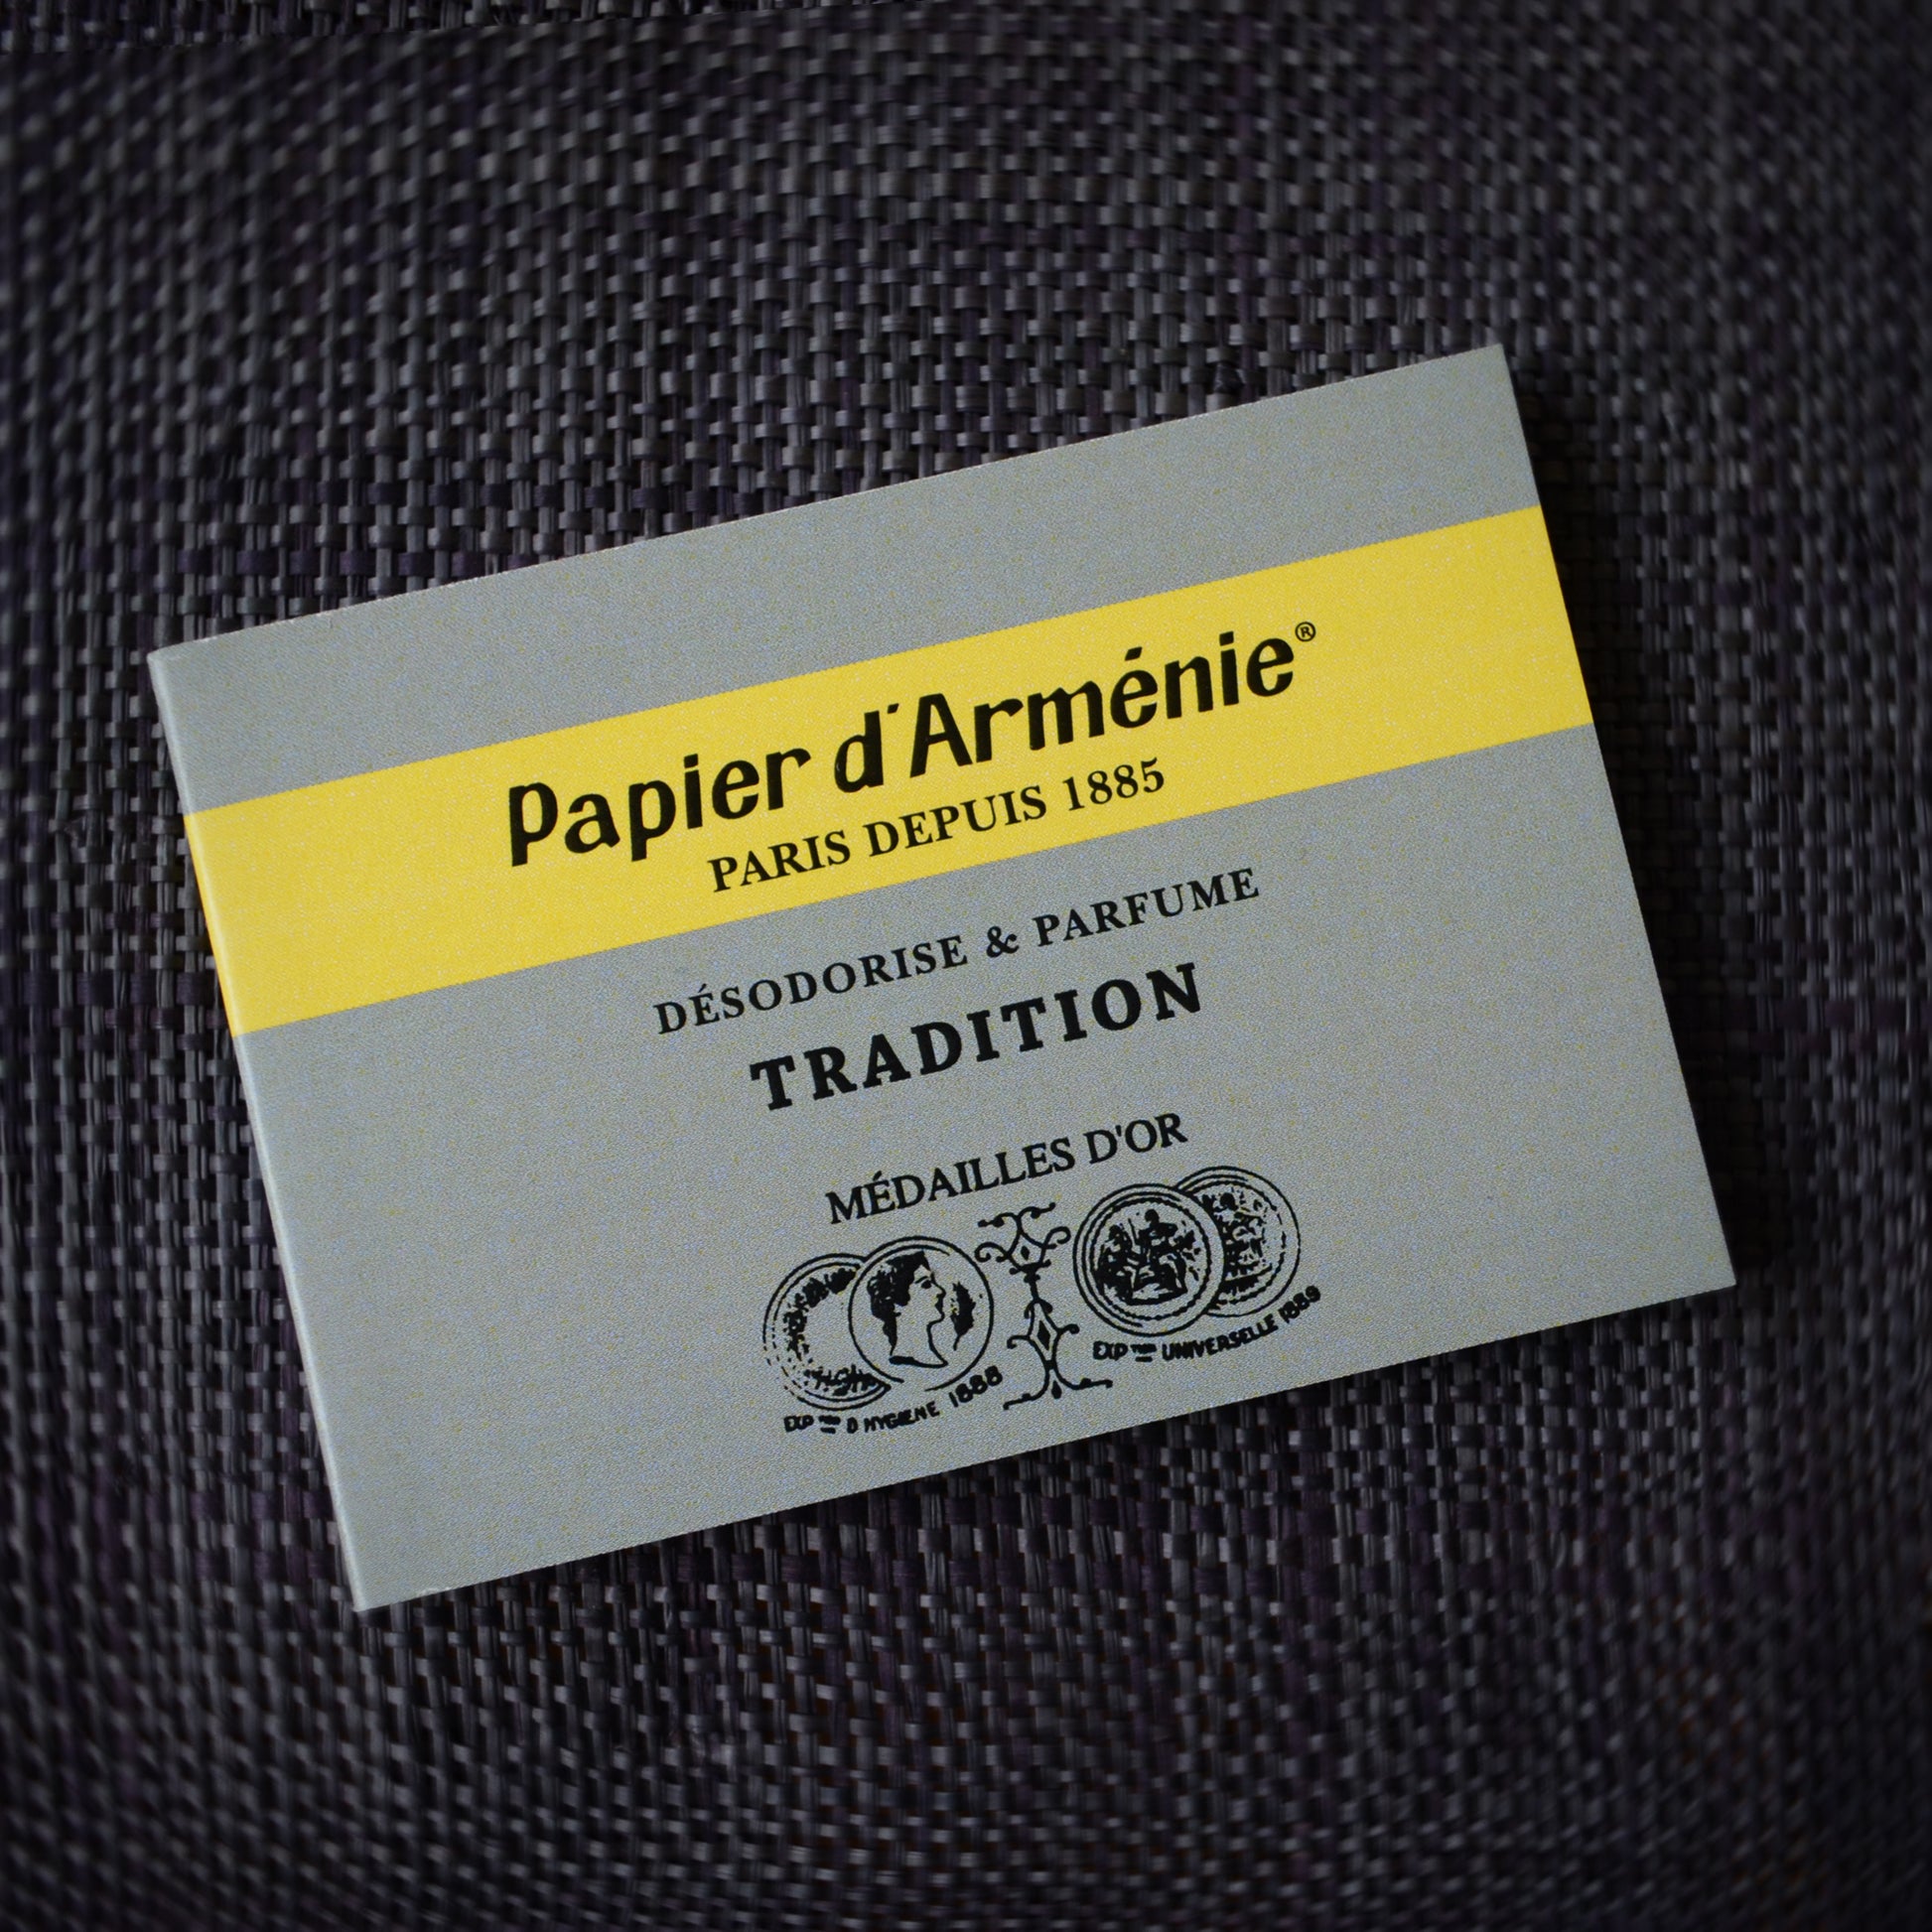 _Papier d'Arménie – L'Impatience Ceramics